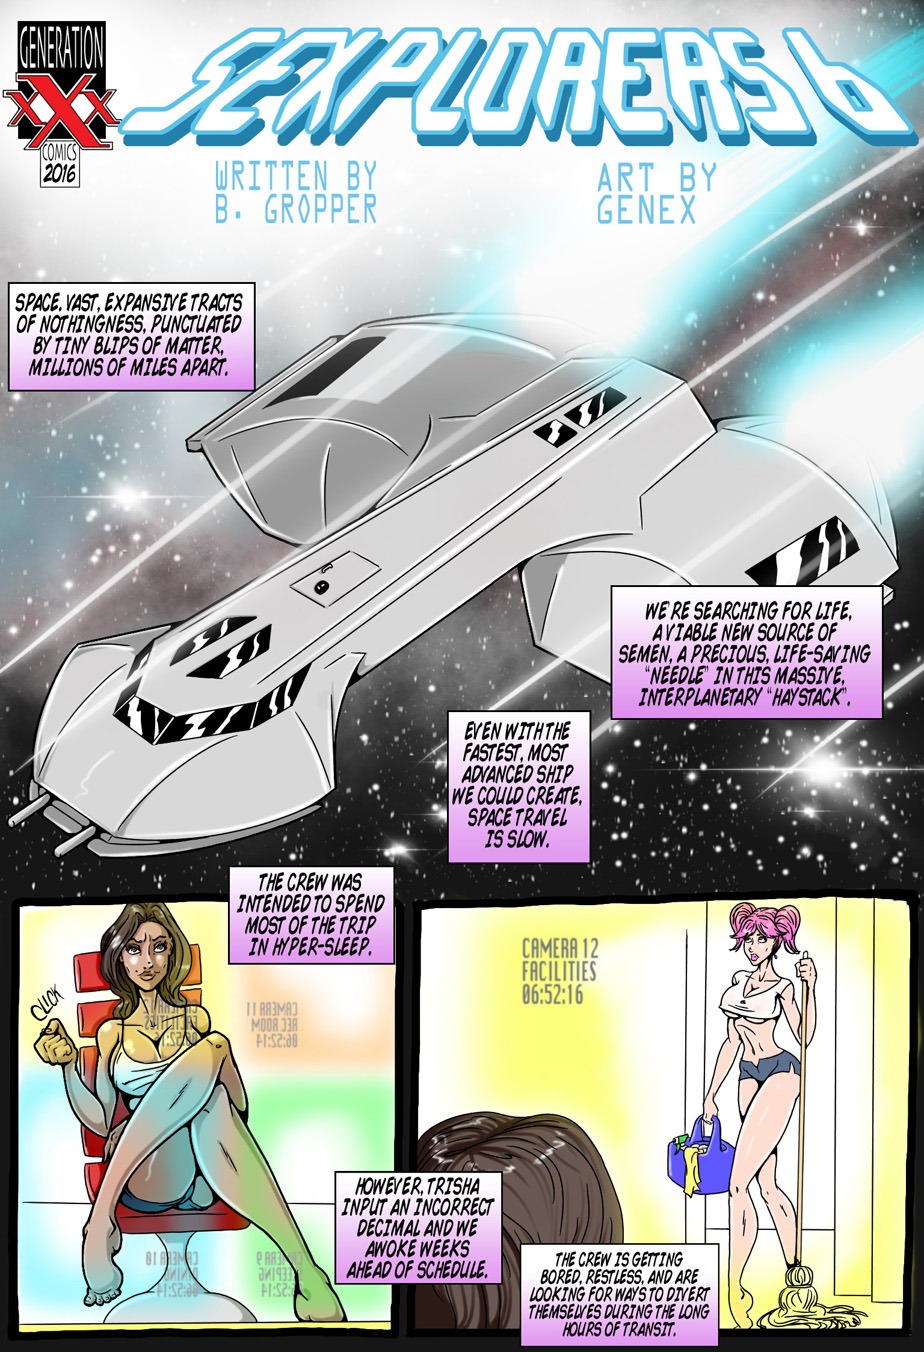 Porn Comics - Sexplorers 6 Episode 2 porn comics 8 muses